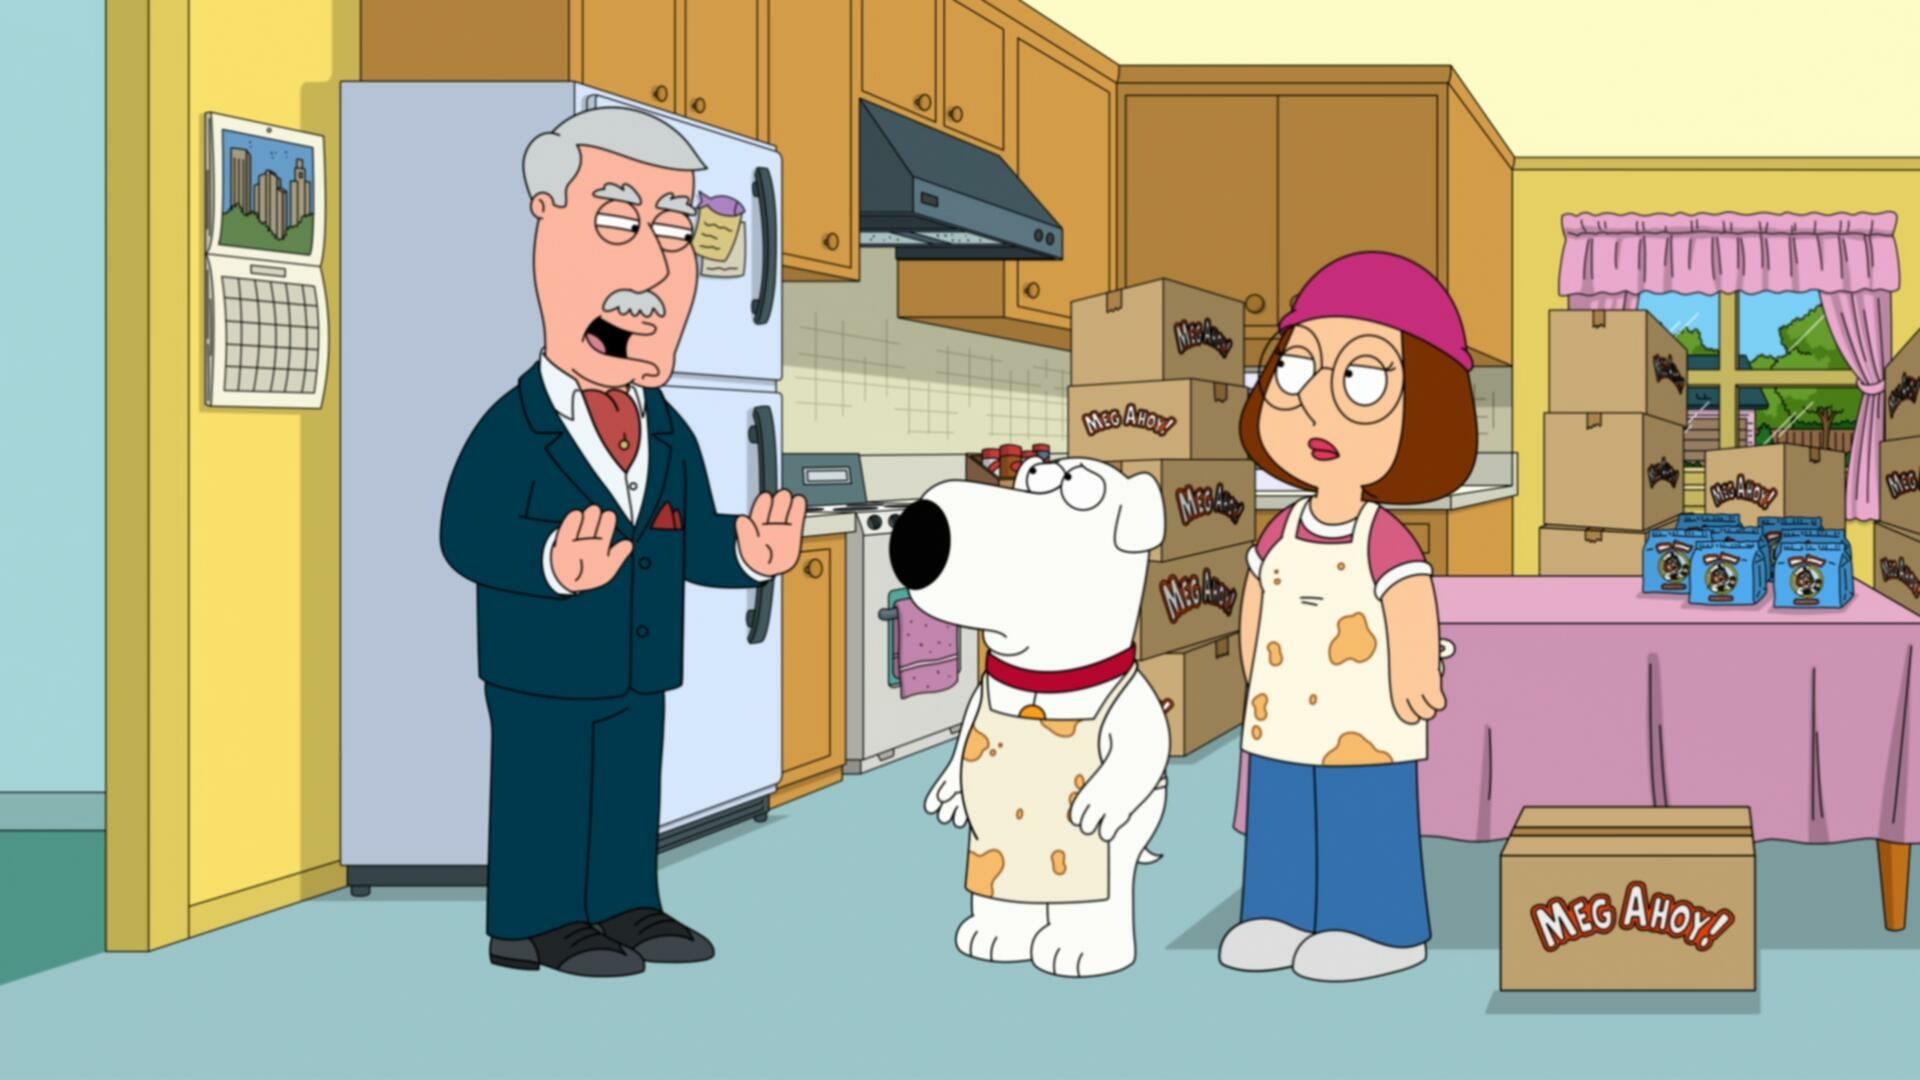 Family Guy S22E08 Baking Sad 1080p DSNP WEB DL DDP5 1 H 264 NTb TGx